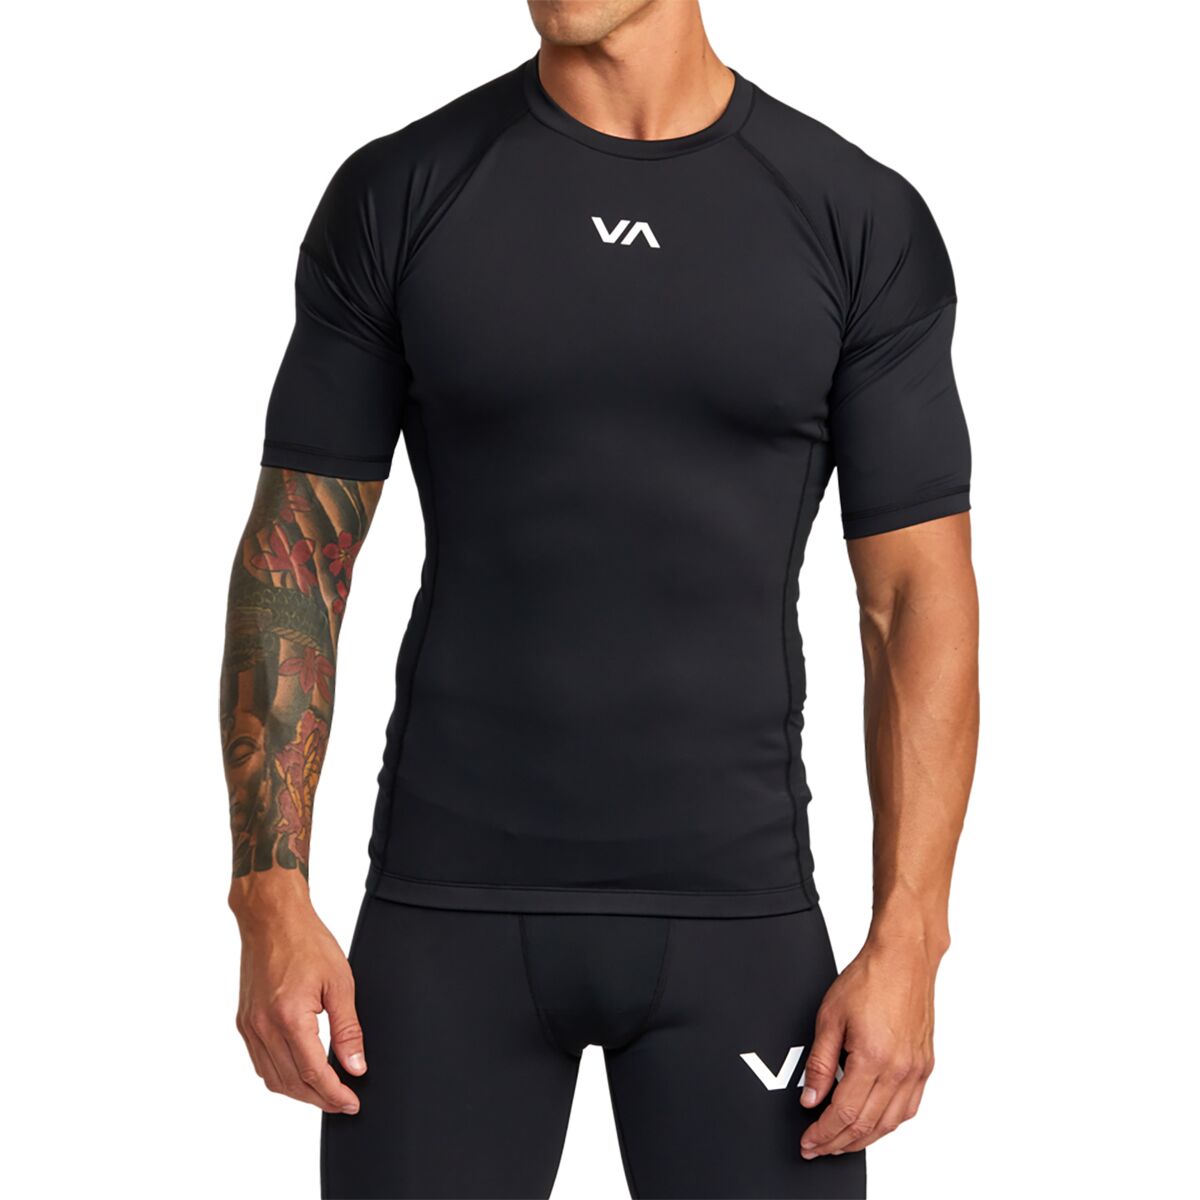 RVCA Compression Short-Sleeve Shirt - Men's